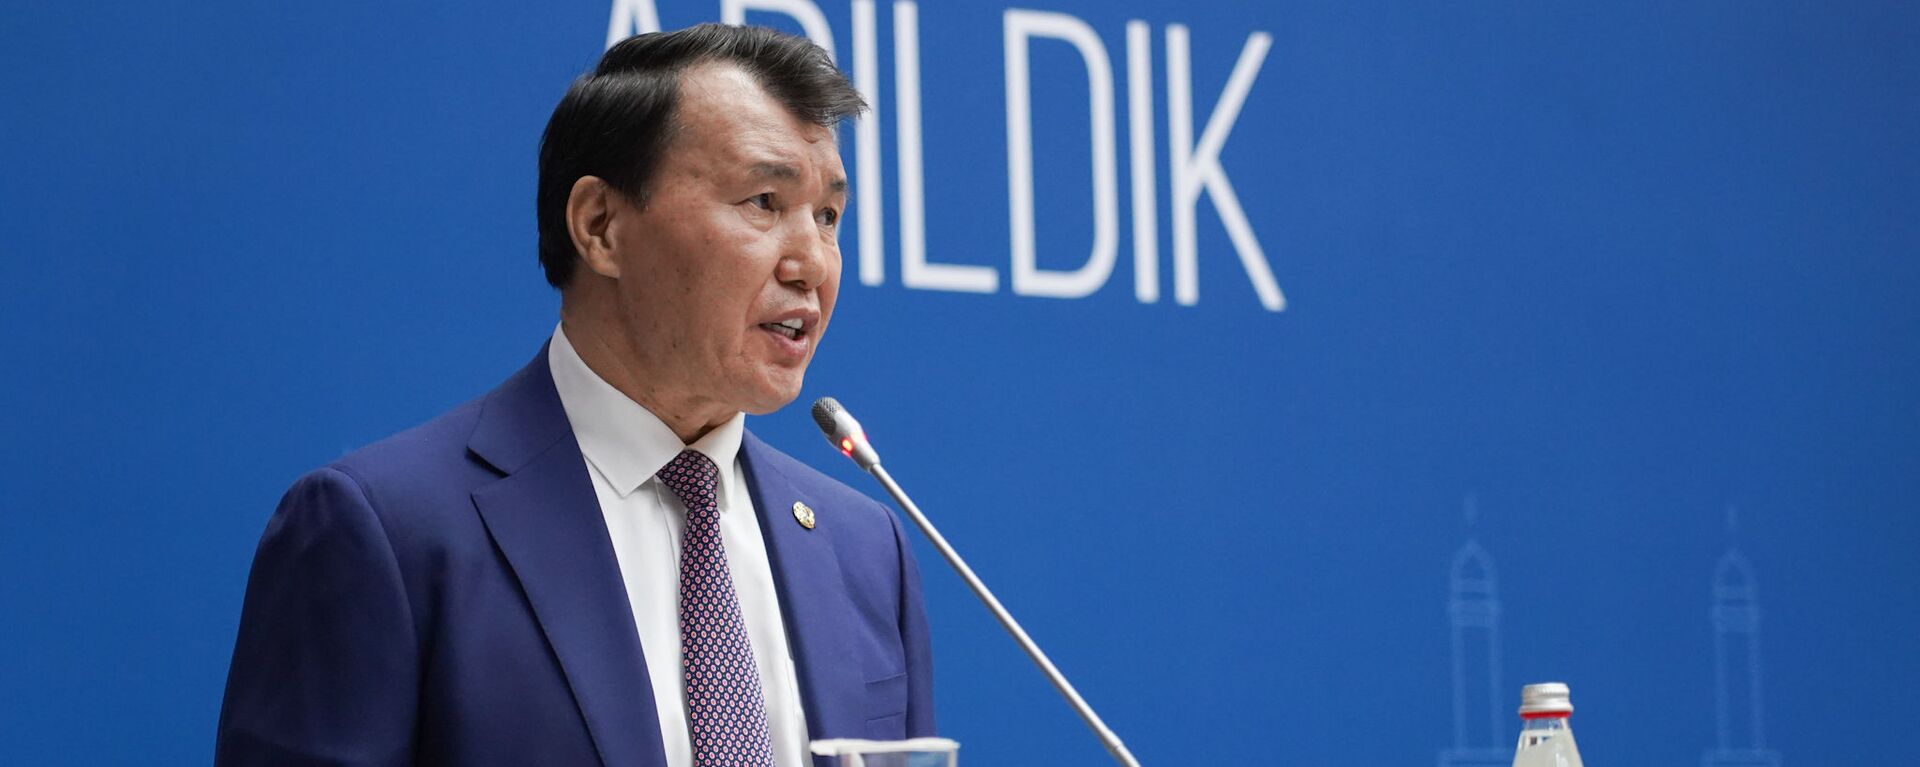 Председатель Агентства по противодействию коррупции Алик Шпекбаев - Sputnik Казахстан, 1920, 29.01.2021